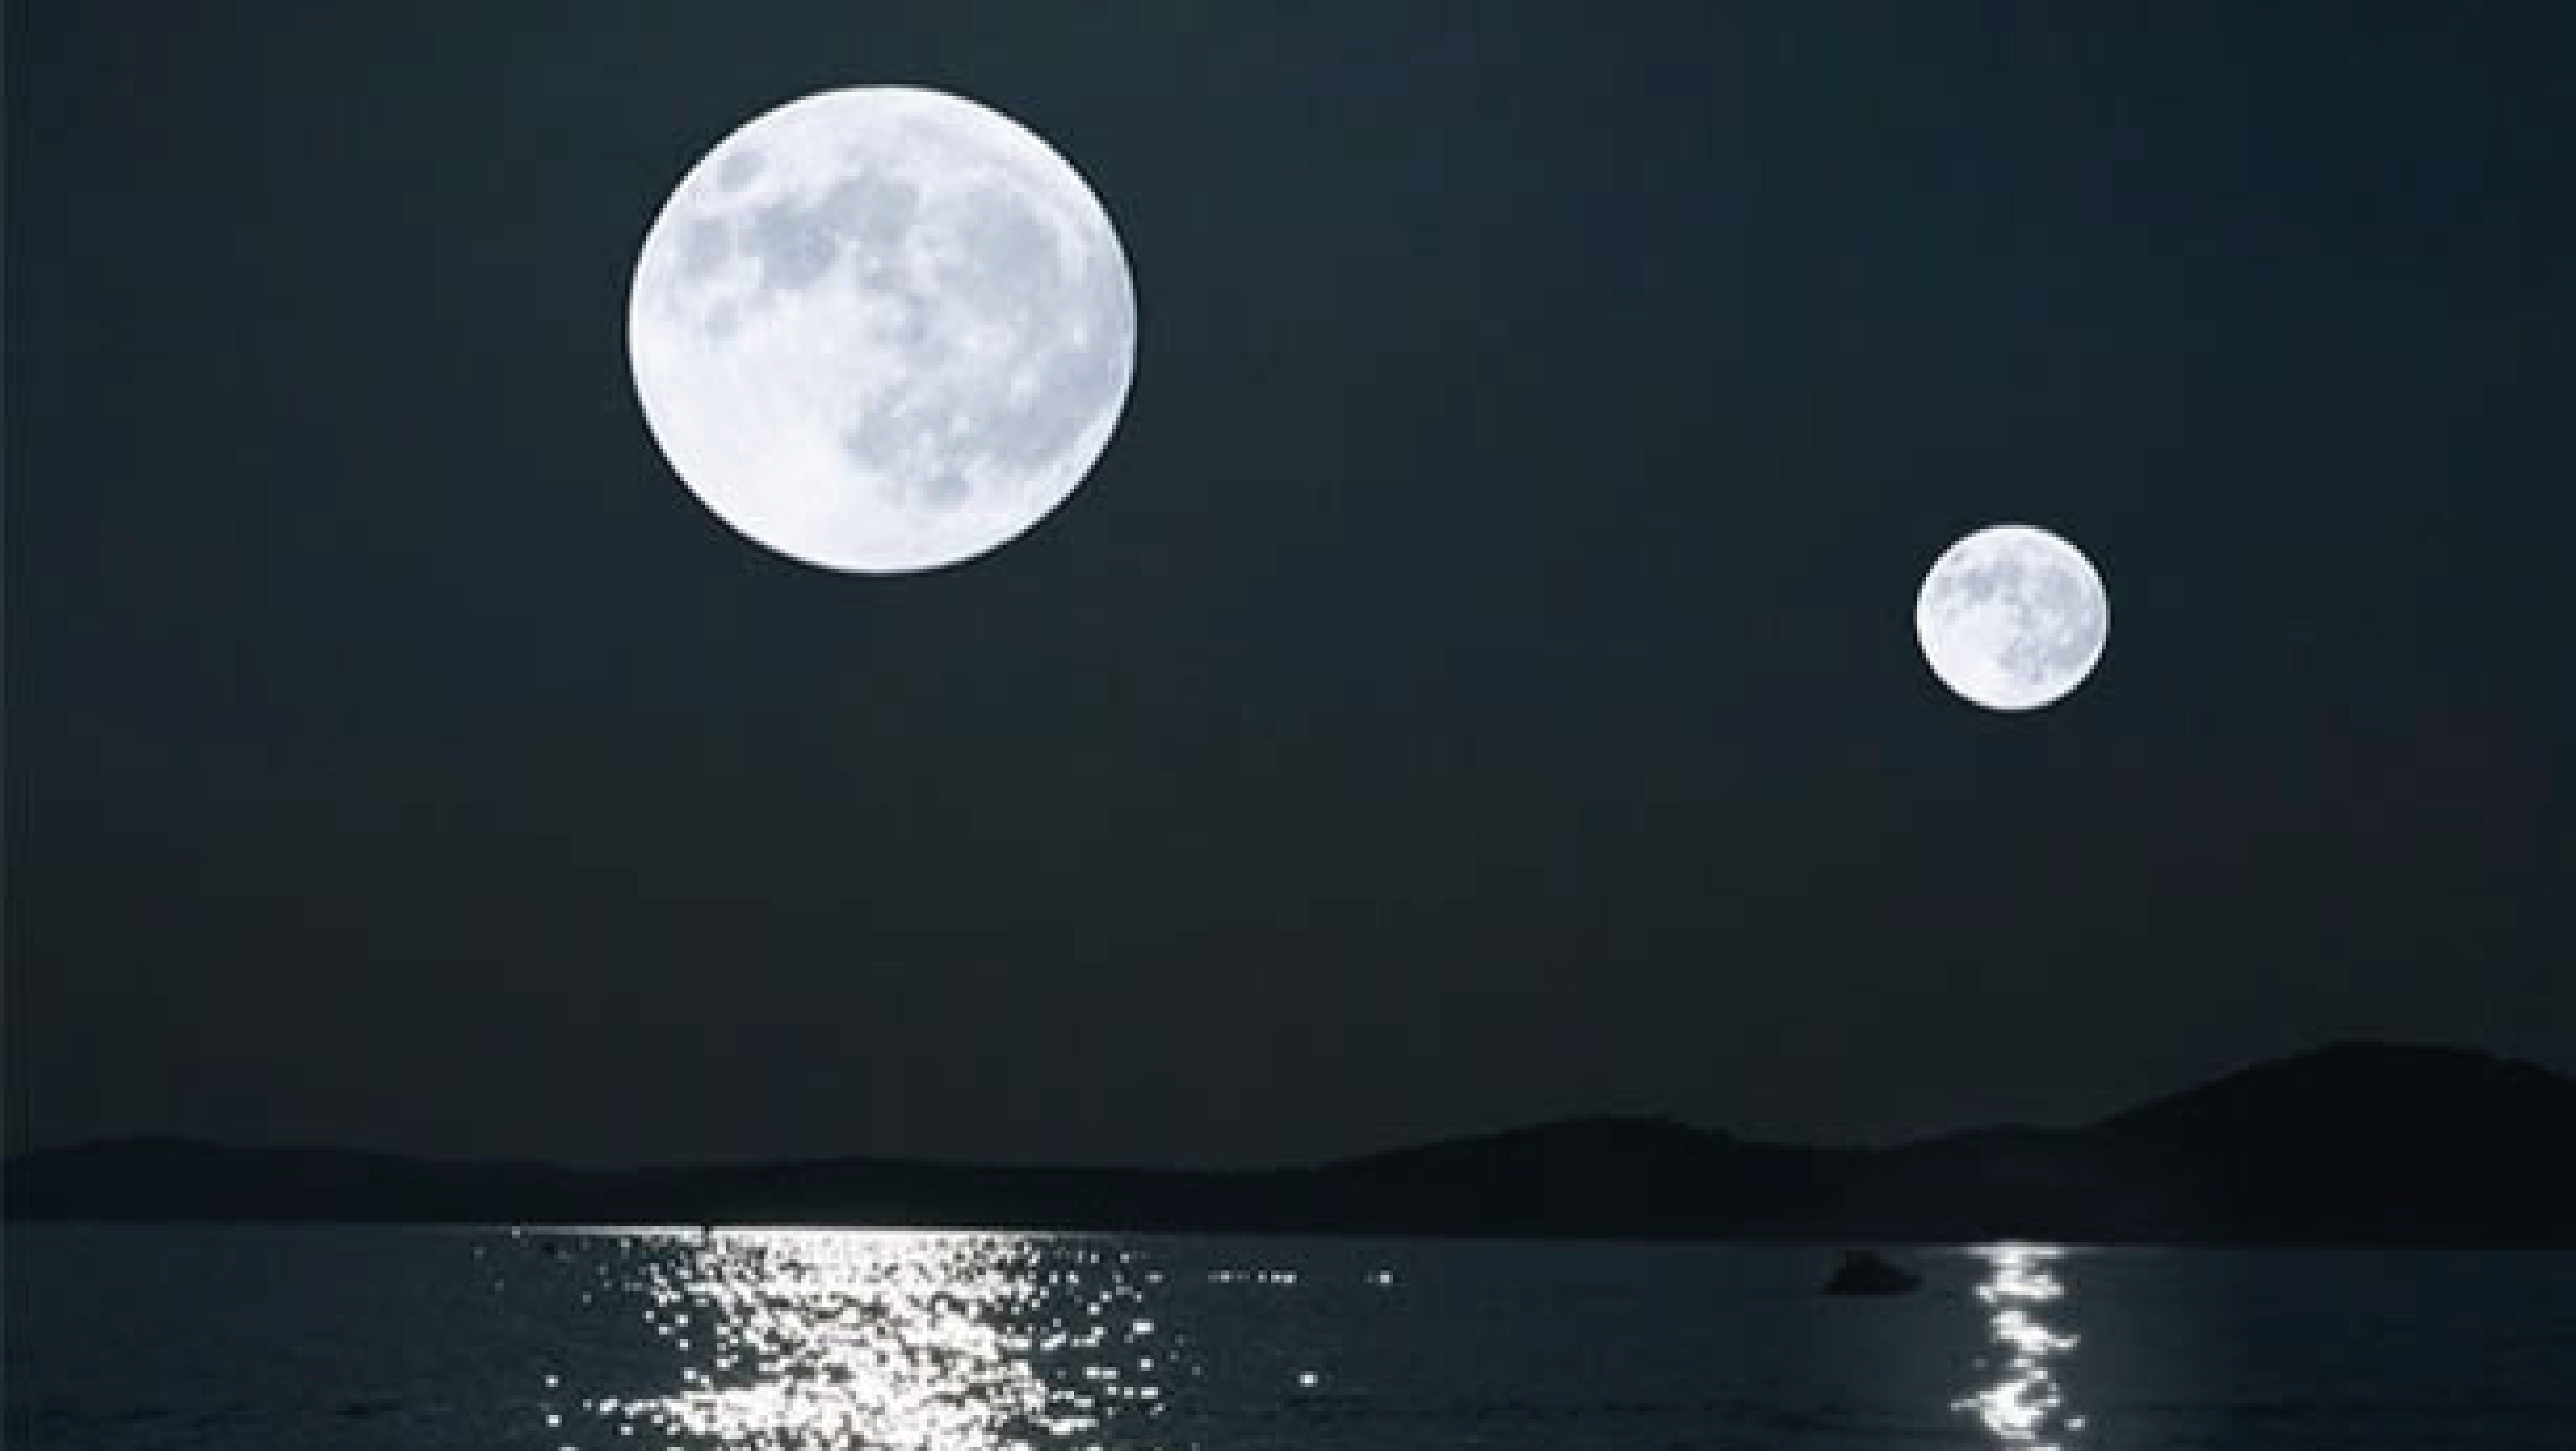 Вижу 2 луны. Две Луны. Несколько лун на небе. Полнолуние фото. Двойная Луна.